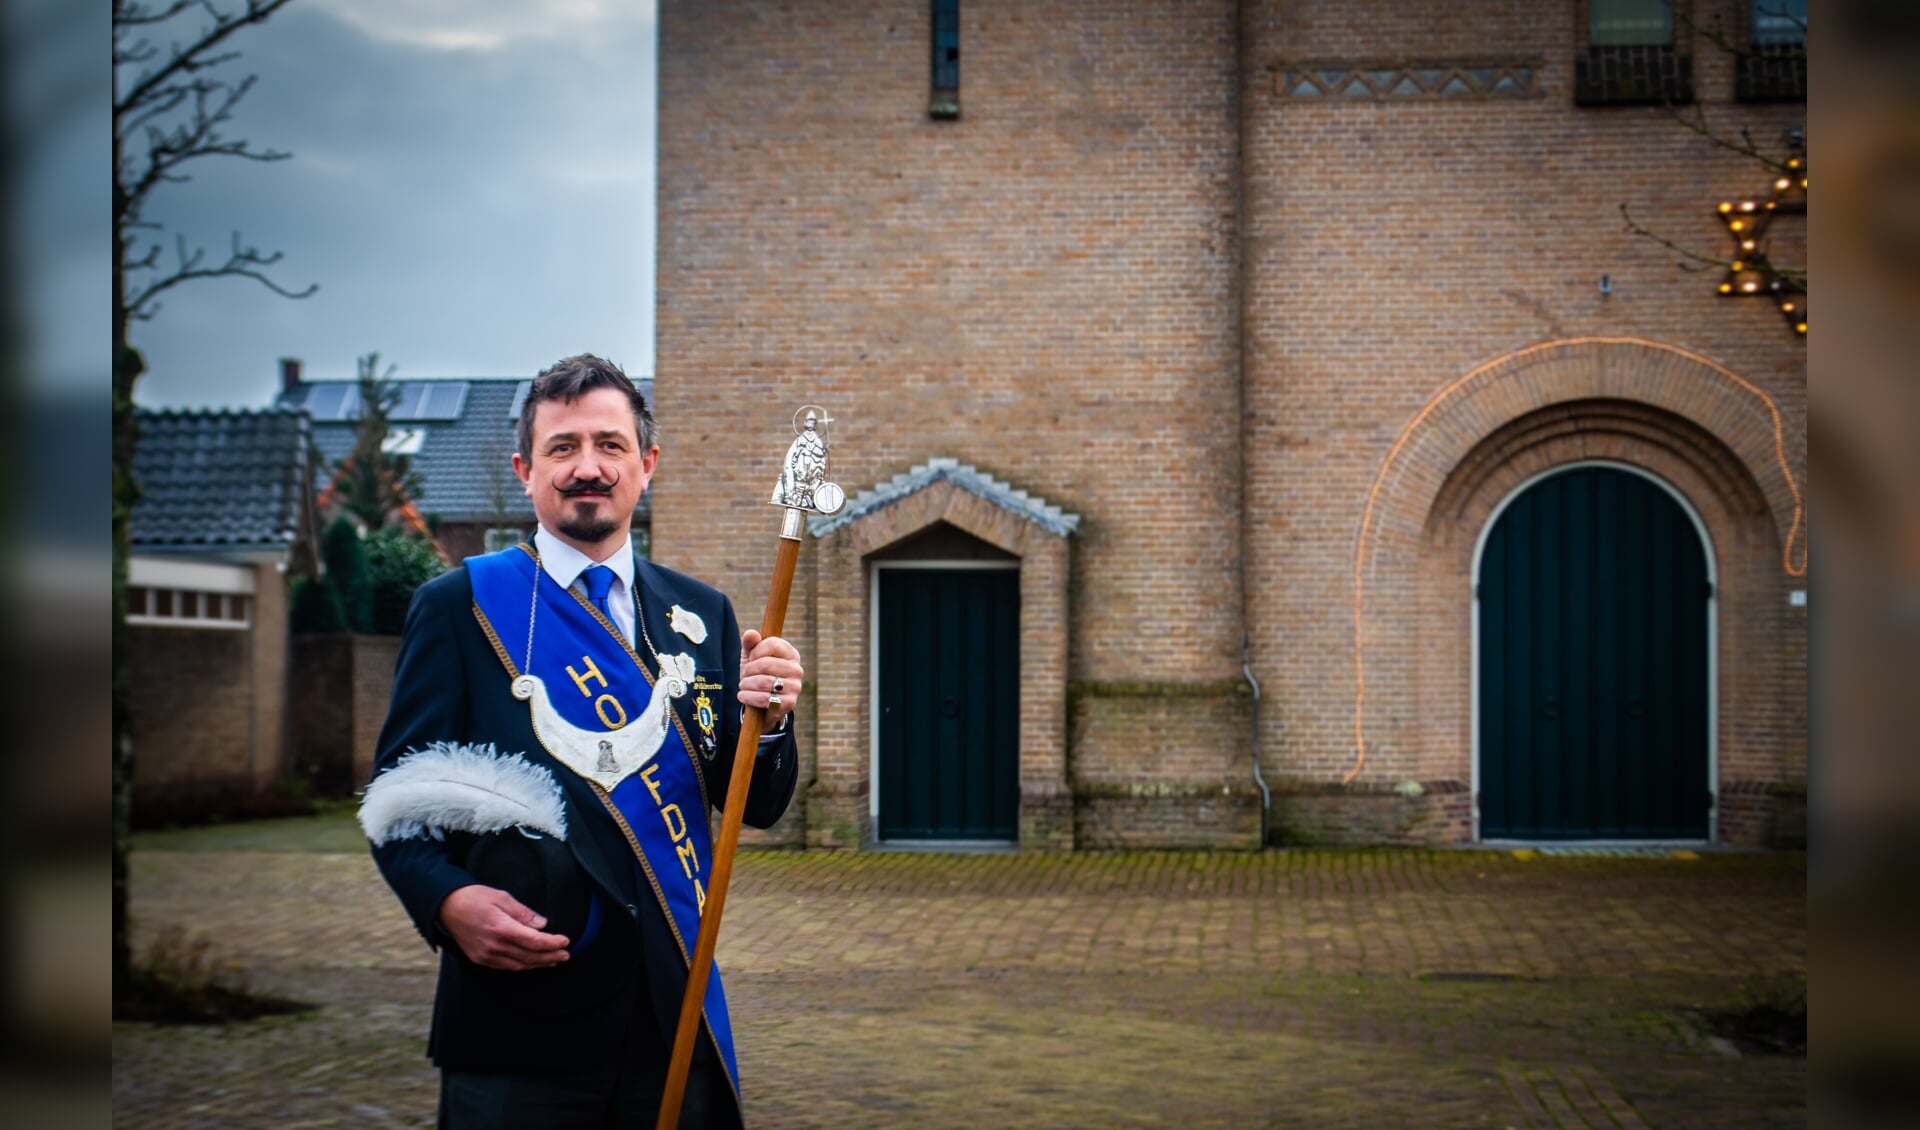 Bart Broosens van het Sint Willibrordusgilde uit Klein Zundert is te zien een een promovideo van het ministerie van BZK.